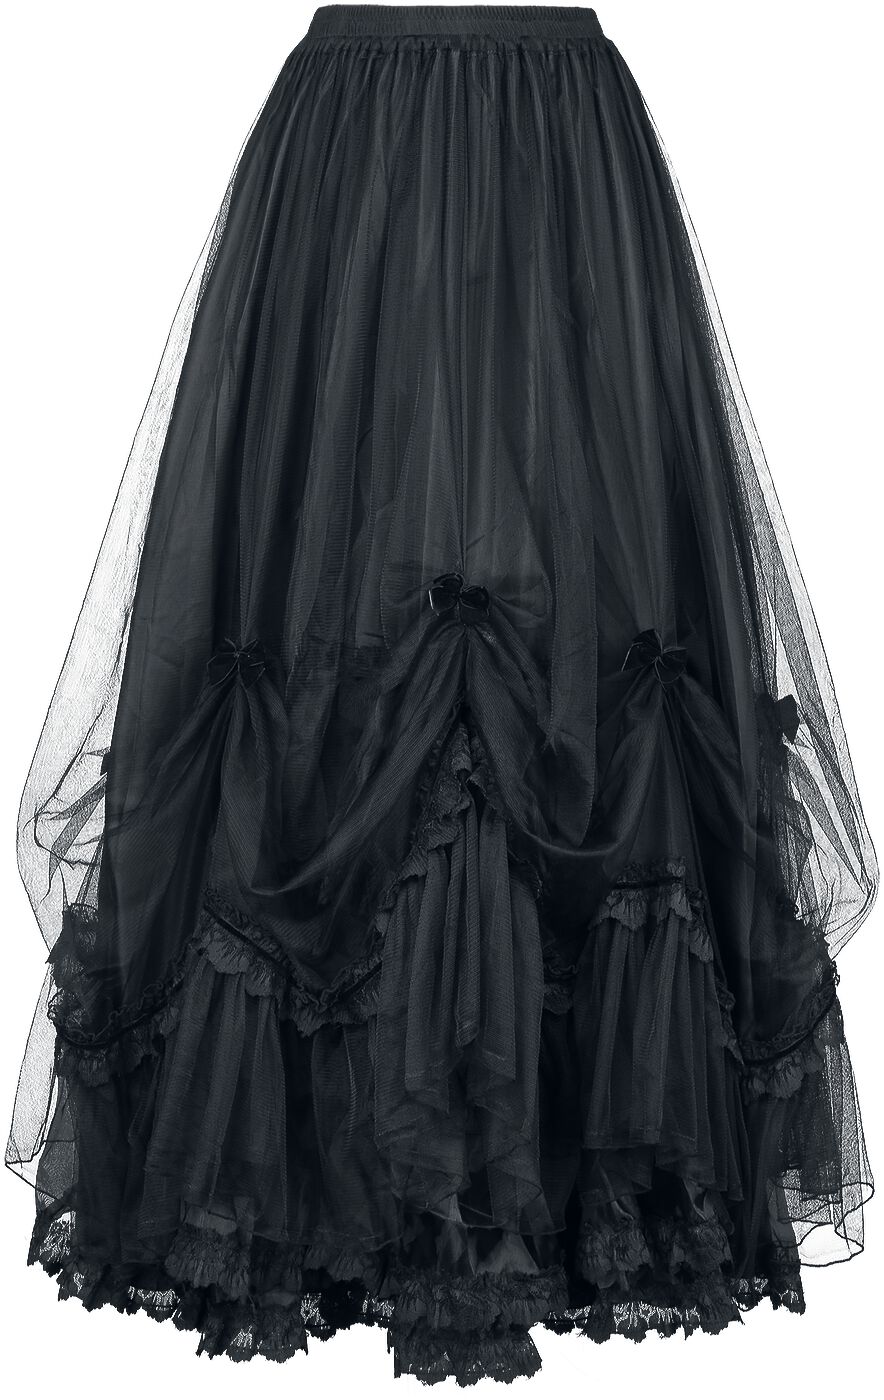 Sinister Gothic Gothic Skirt Langer Rock schwarz in XL